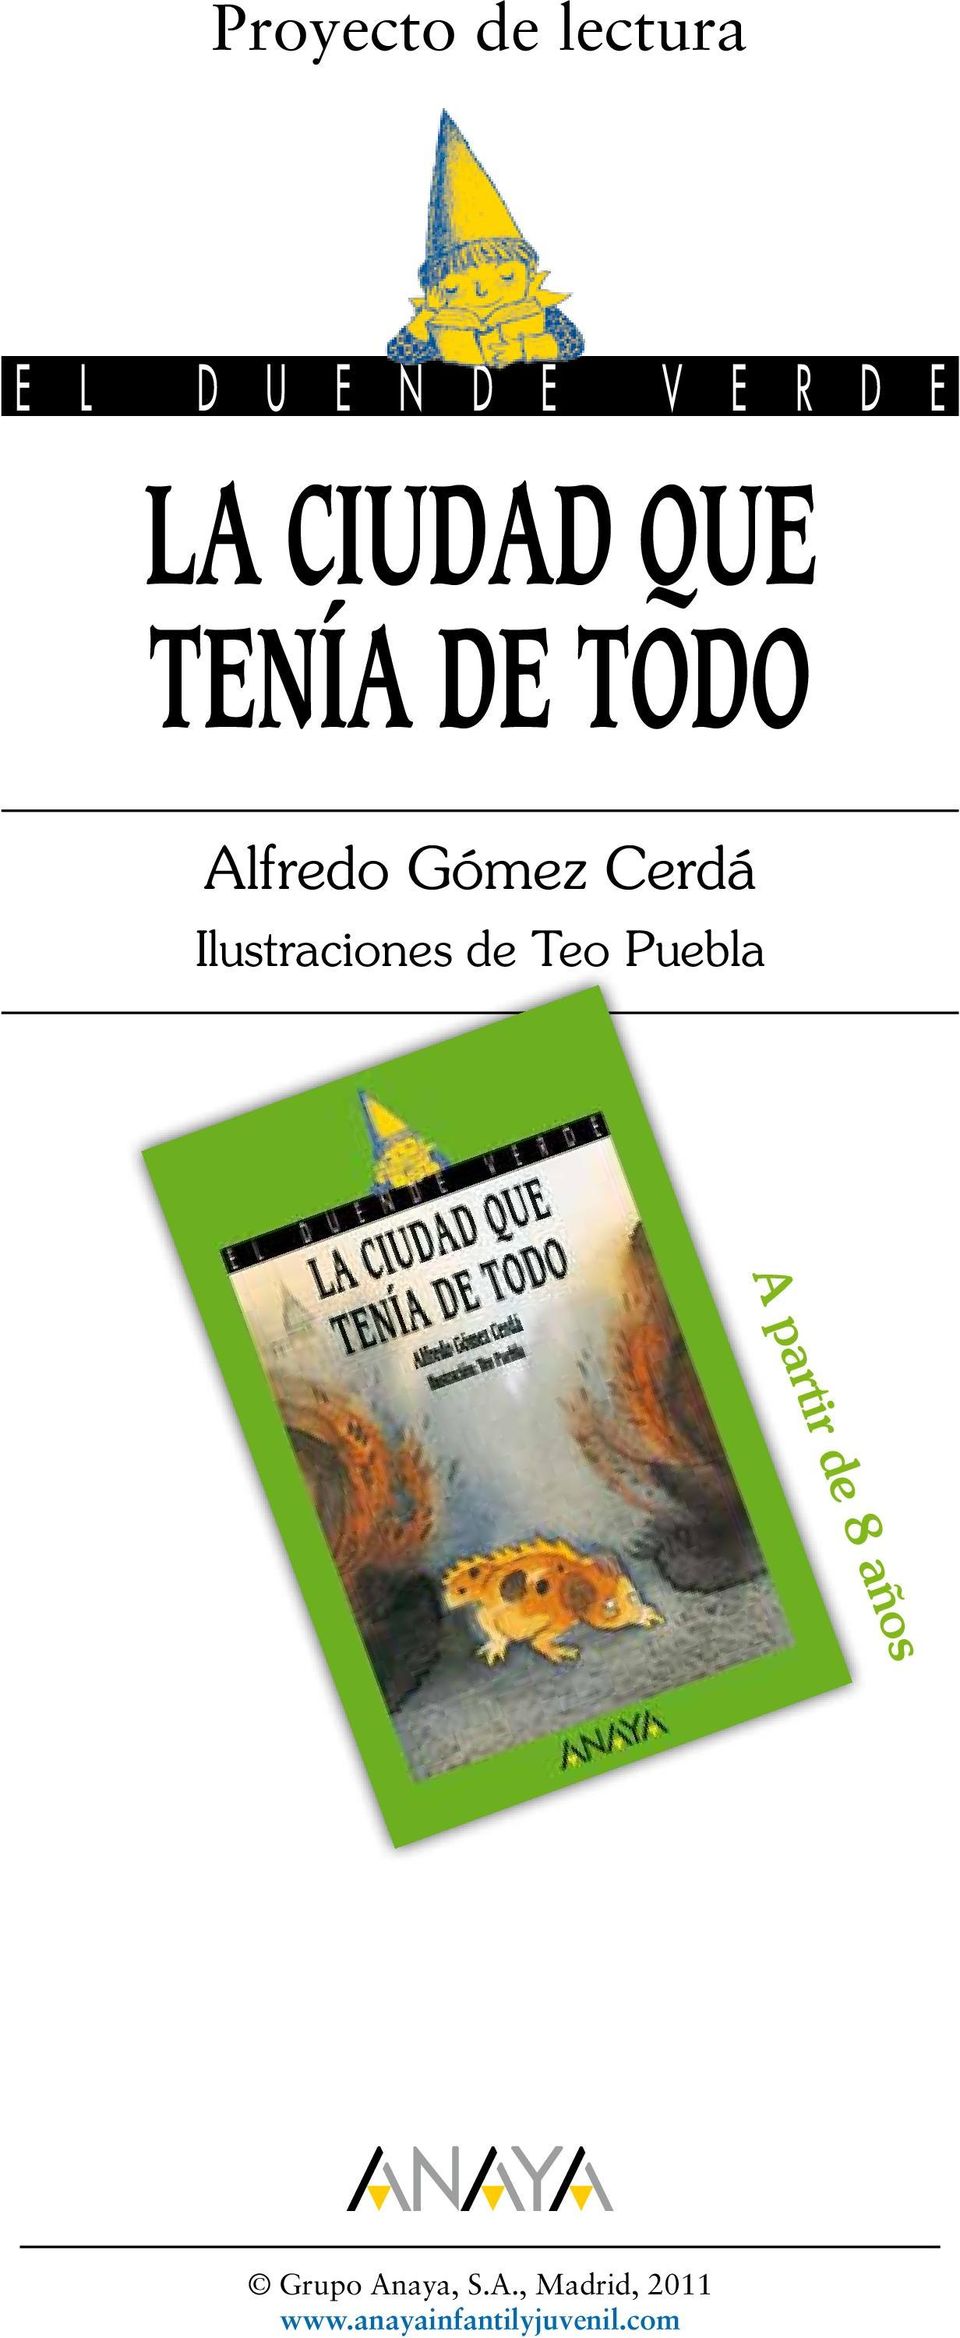 Ilustraciones de Teo Puebla A partir de 8 años